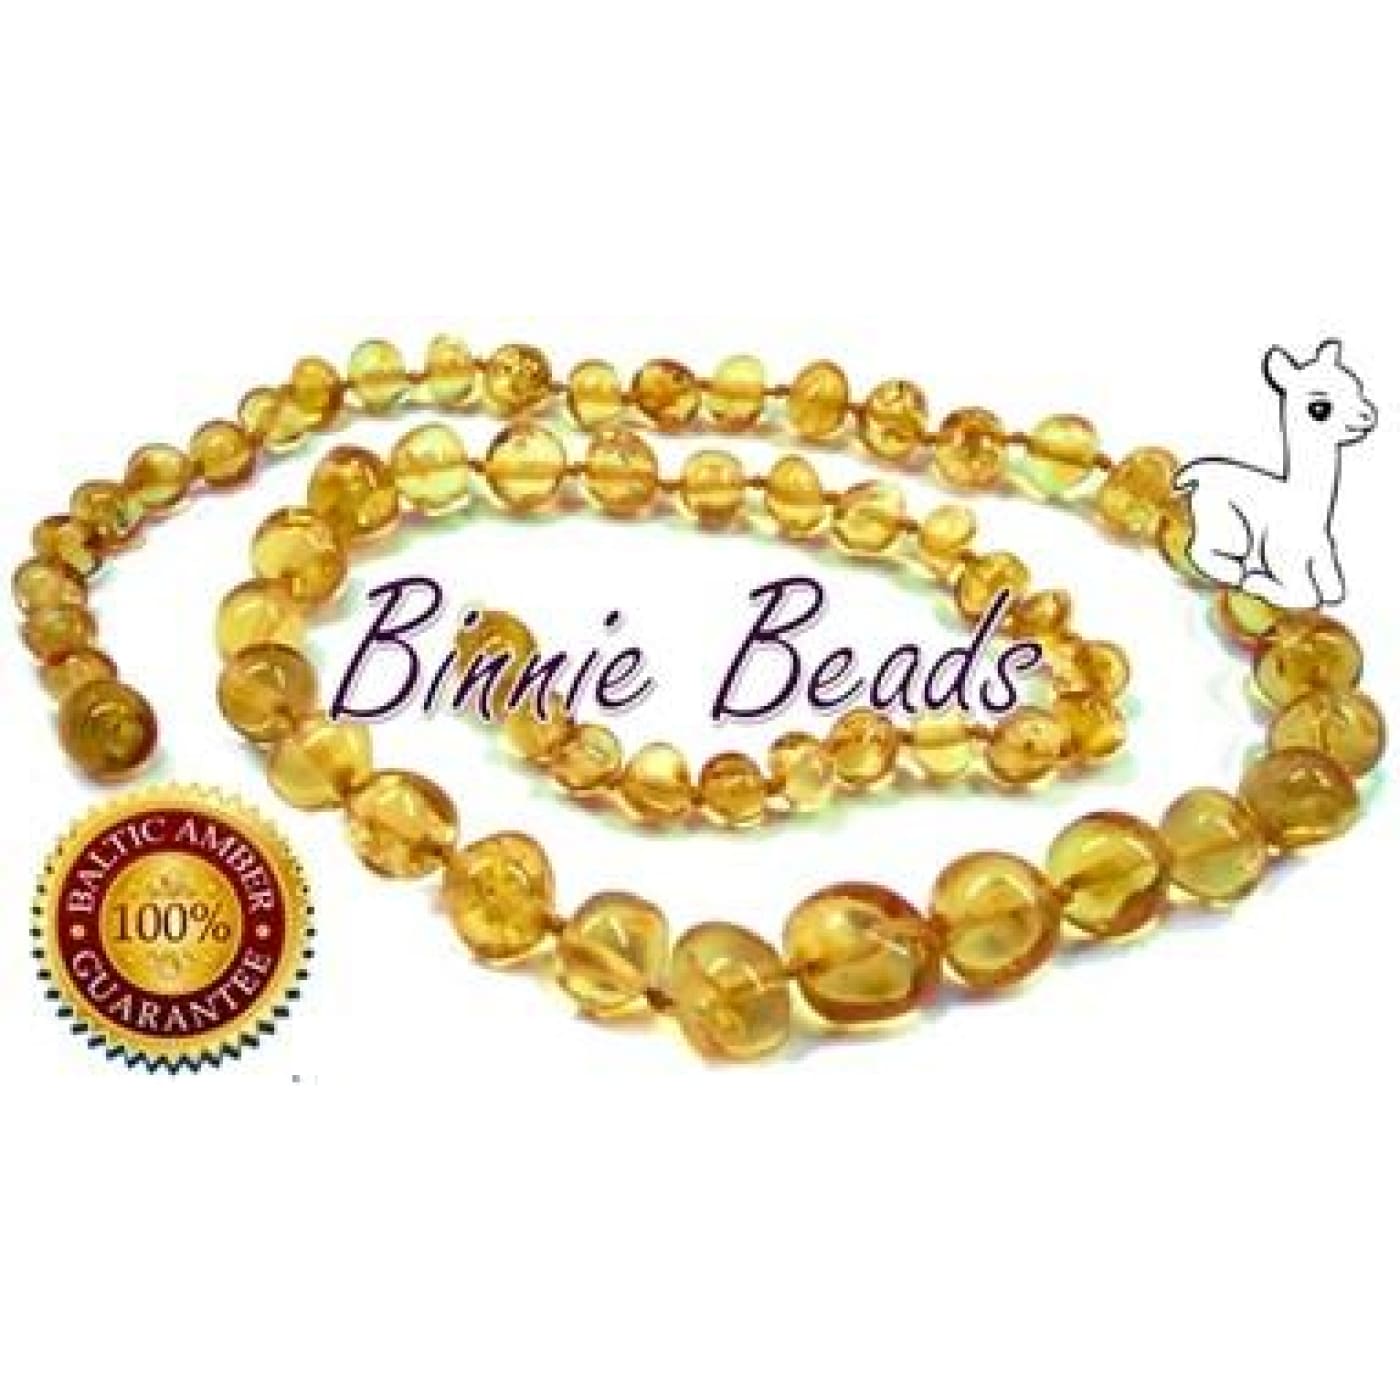 Binnie Baltic Amber Teething Baby Necklace - Honey 32CM - NURSING & FEEDING - TEETHERS/TEETHING JEWELLERY